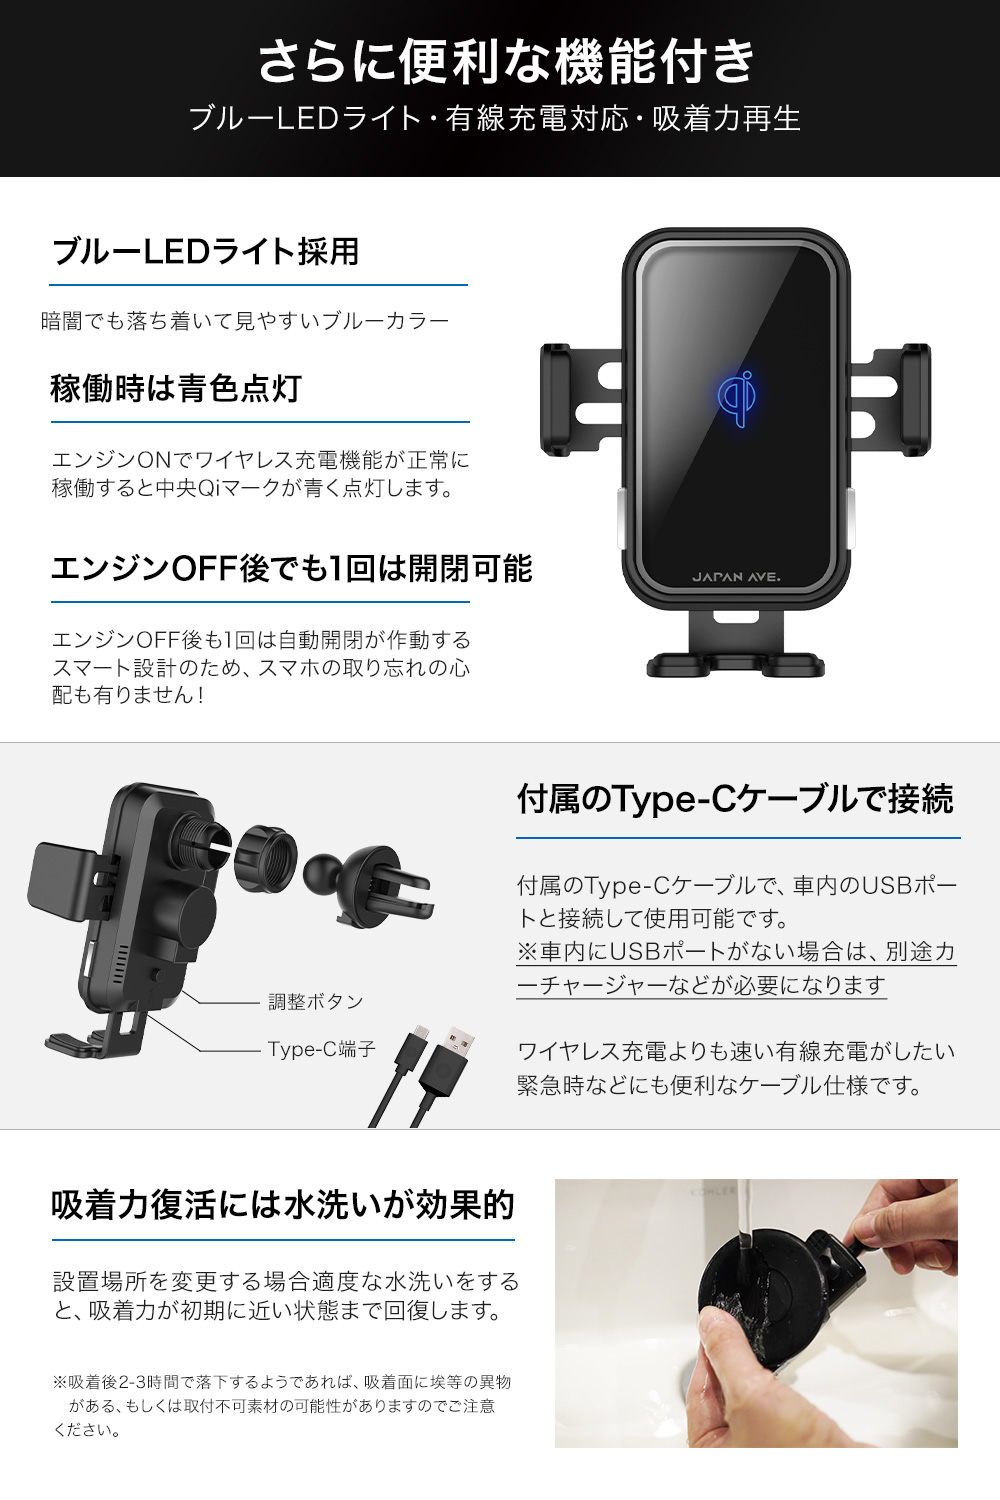 スマホホルダー 車 AVE AVE. Android JA620 JAPAN Qi TypeC USB iPhone ケーブル スマホ スマホスタンド  スマートセンサー センサー式 ワイヤレス充電 充電 充電器 各種 対応 急速充電 最大15W出力 自動開閉 車載ホルダー 車載用 本店 Qi